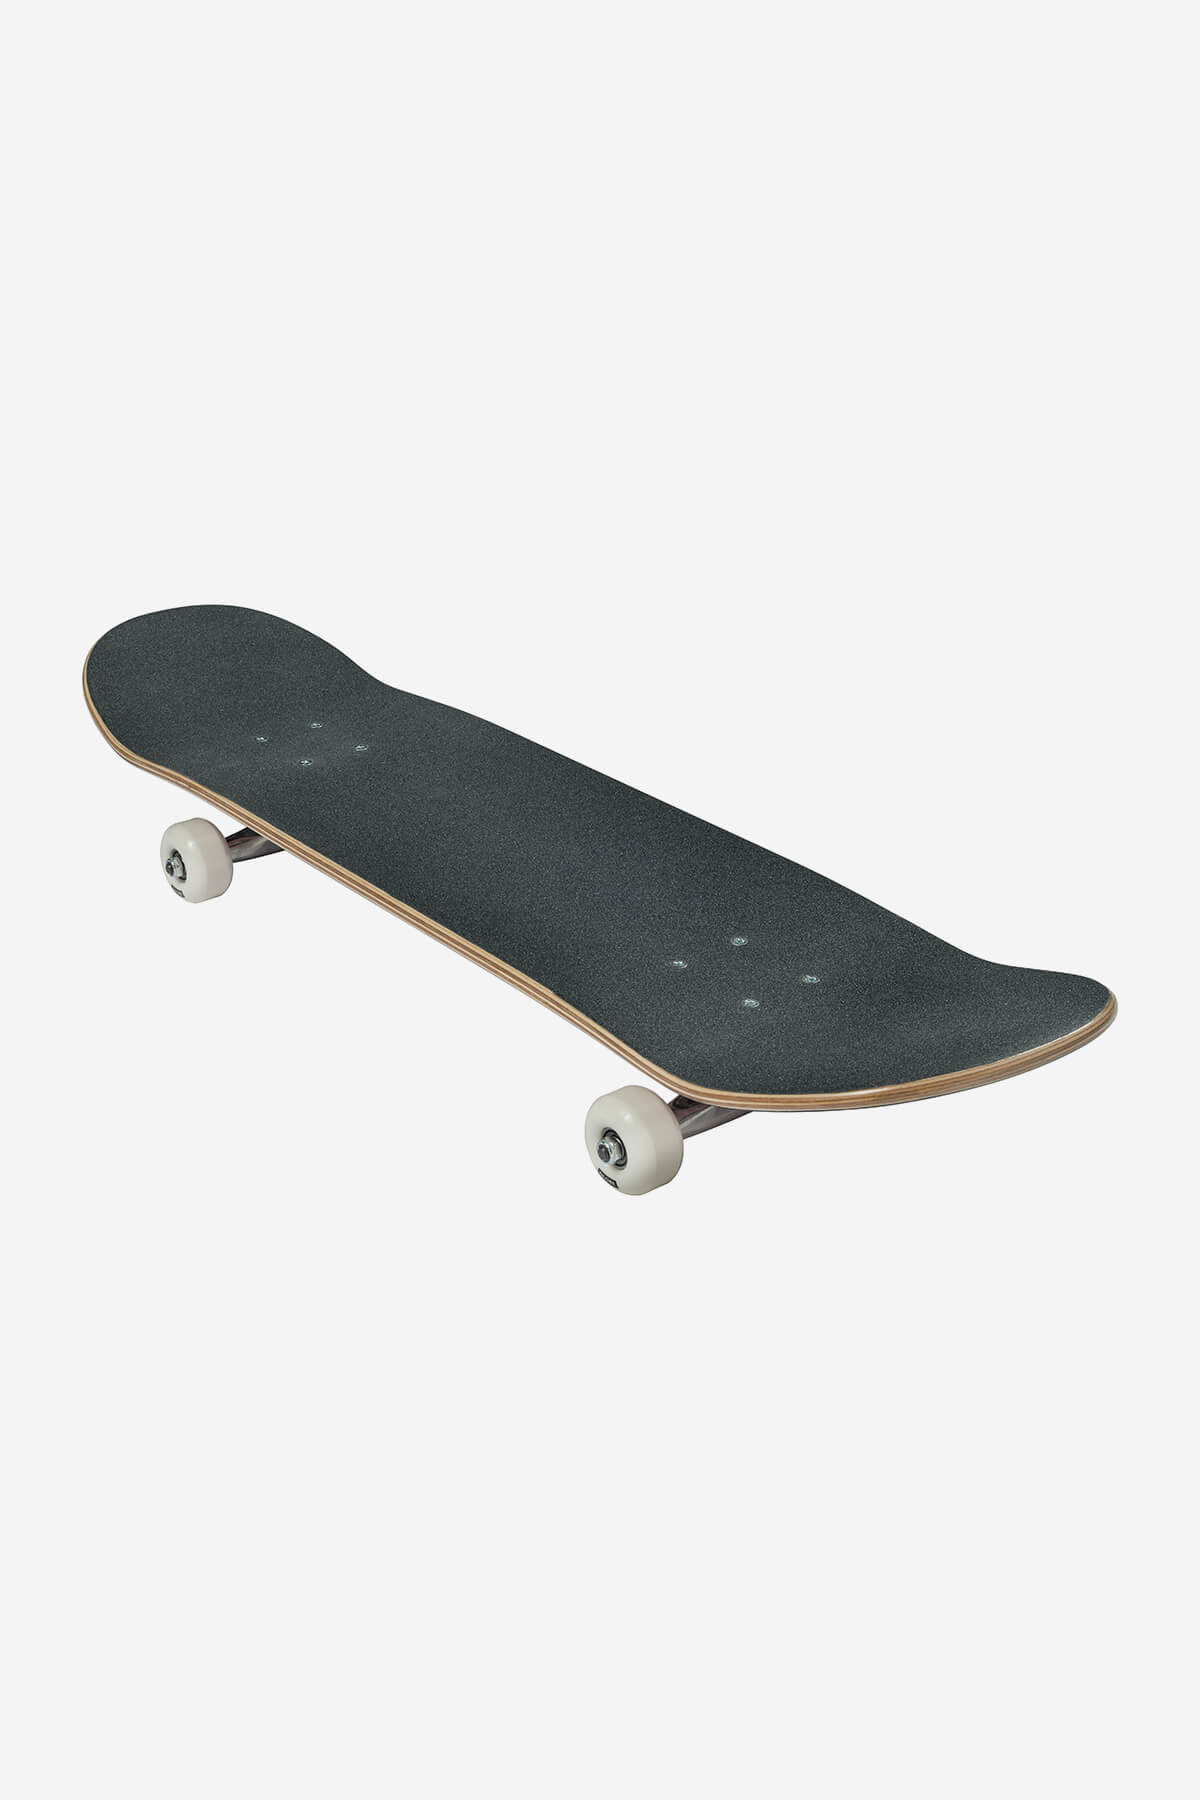 g0 fubar black pink 8.0" complete skateboard